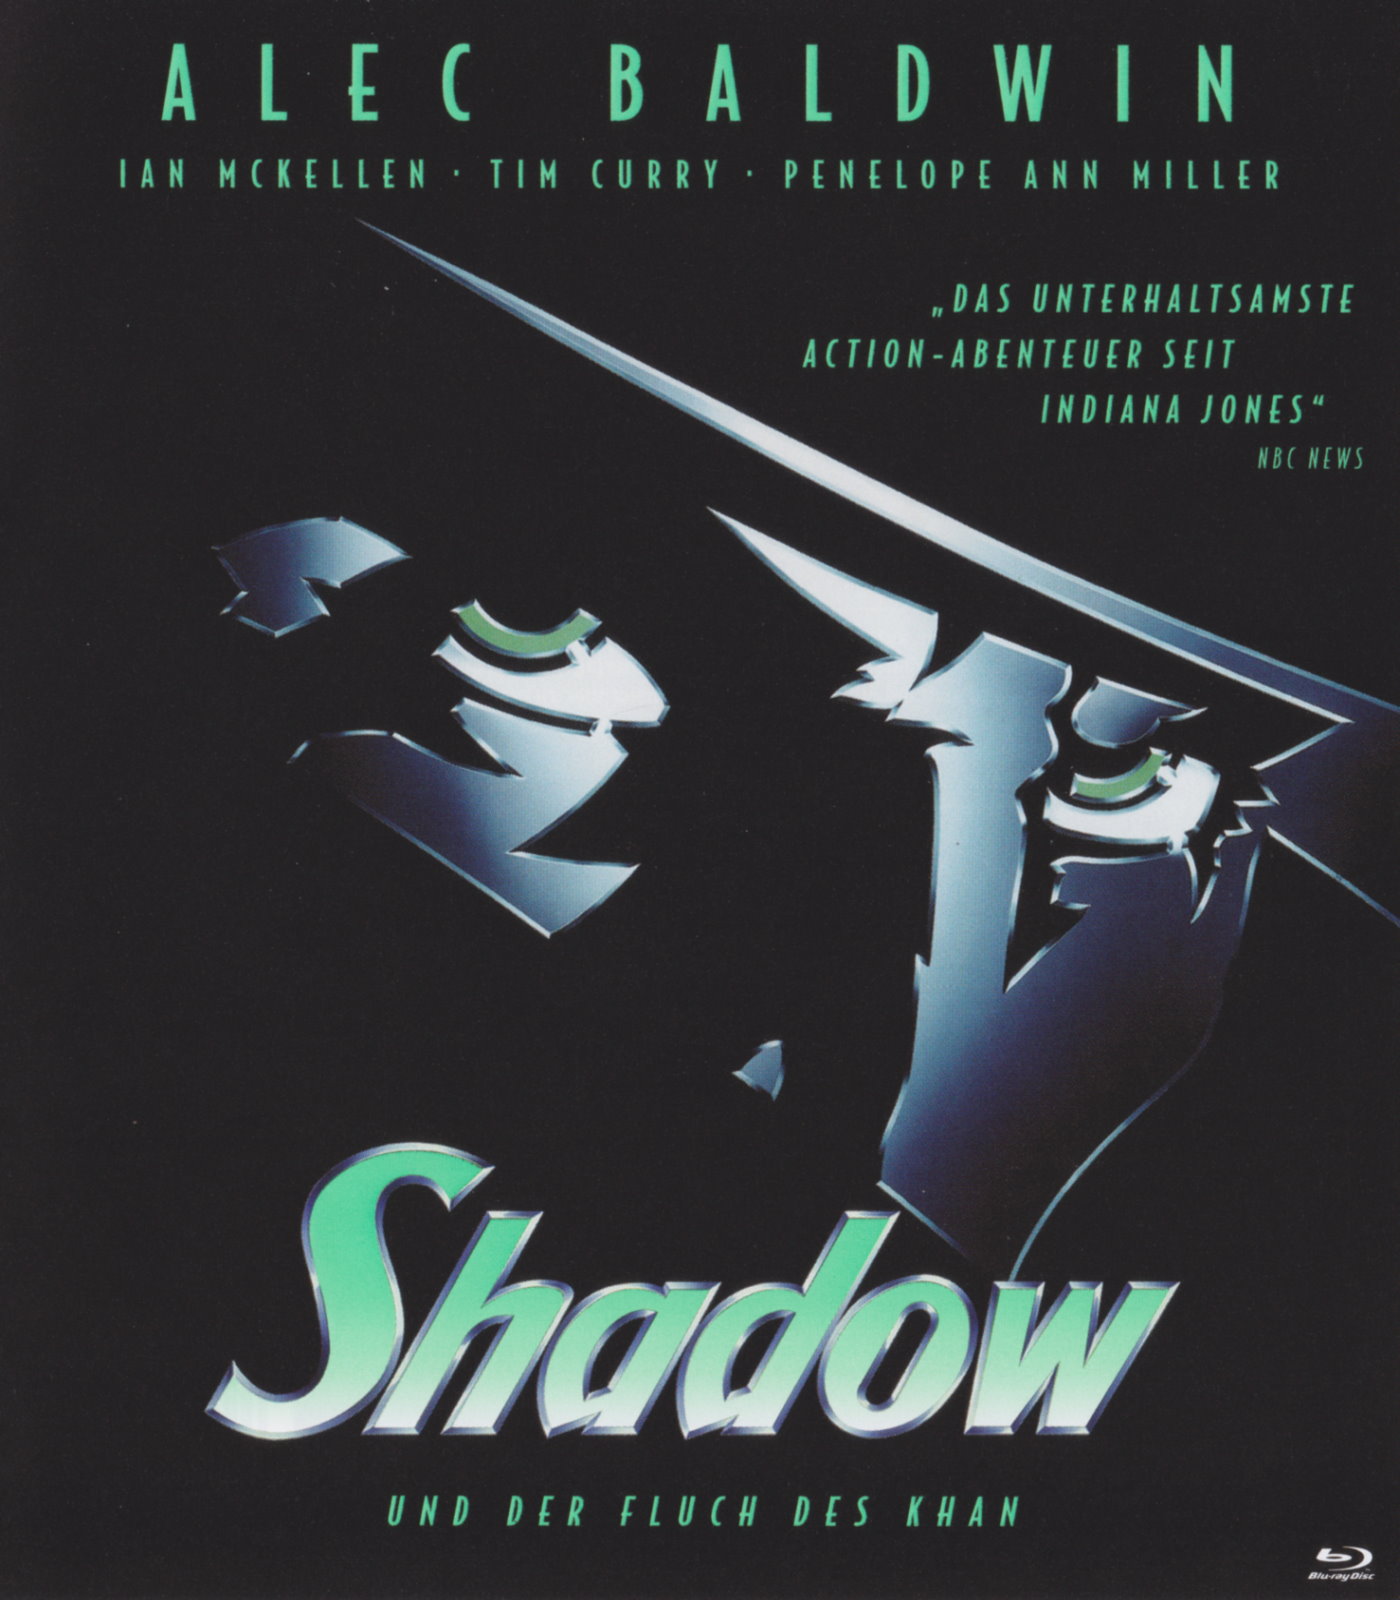 Cover - Shadow und der Fluch des Khan.jpg